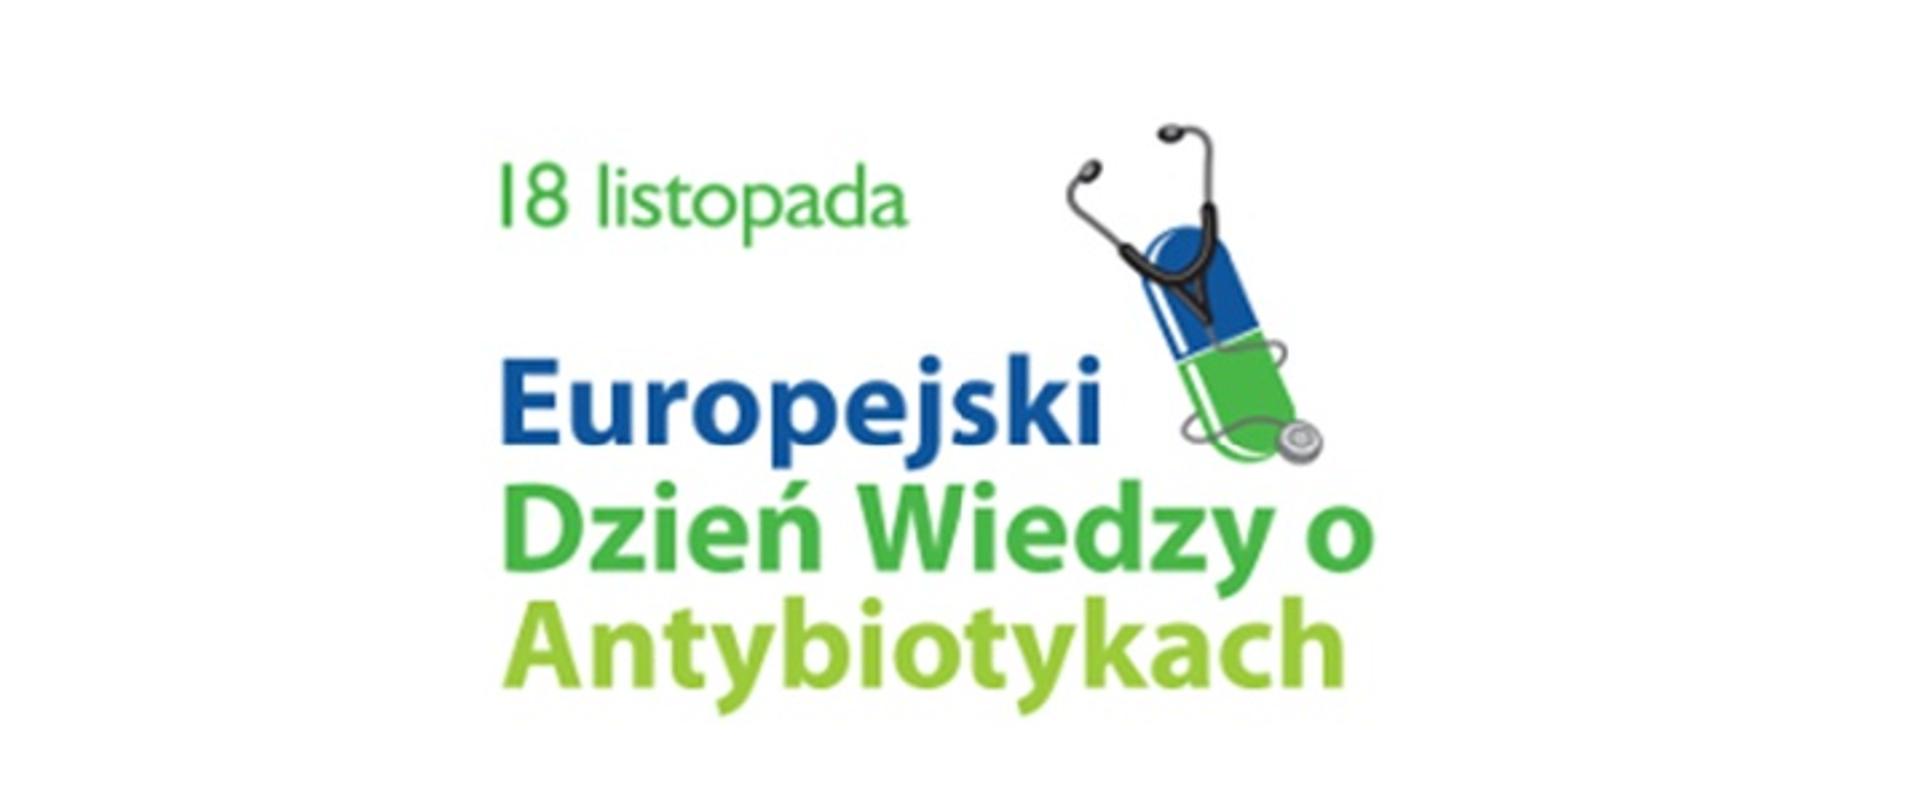 Na białym tle znajduje się zielono-niebieski napis 18 listopada Europejski Dzień Wiedzy o Antybiotykach oraz kapsułka leku ze stetoskopem.